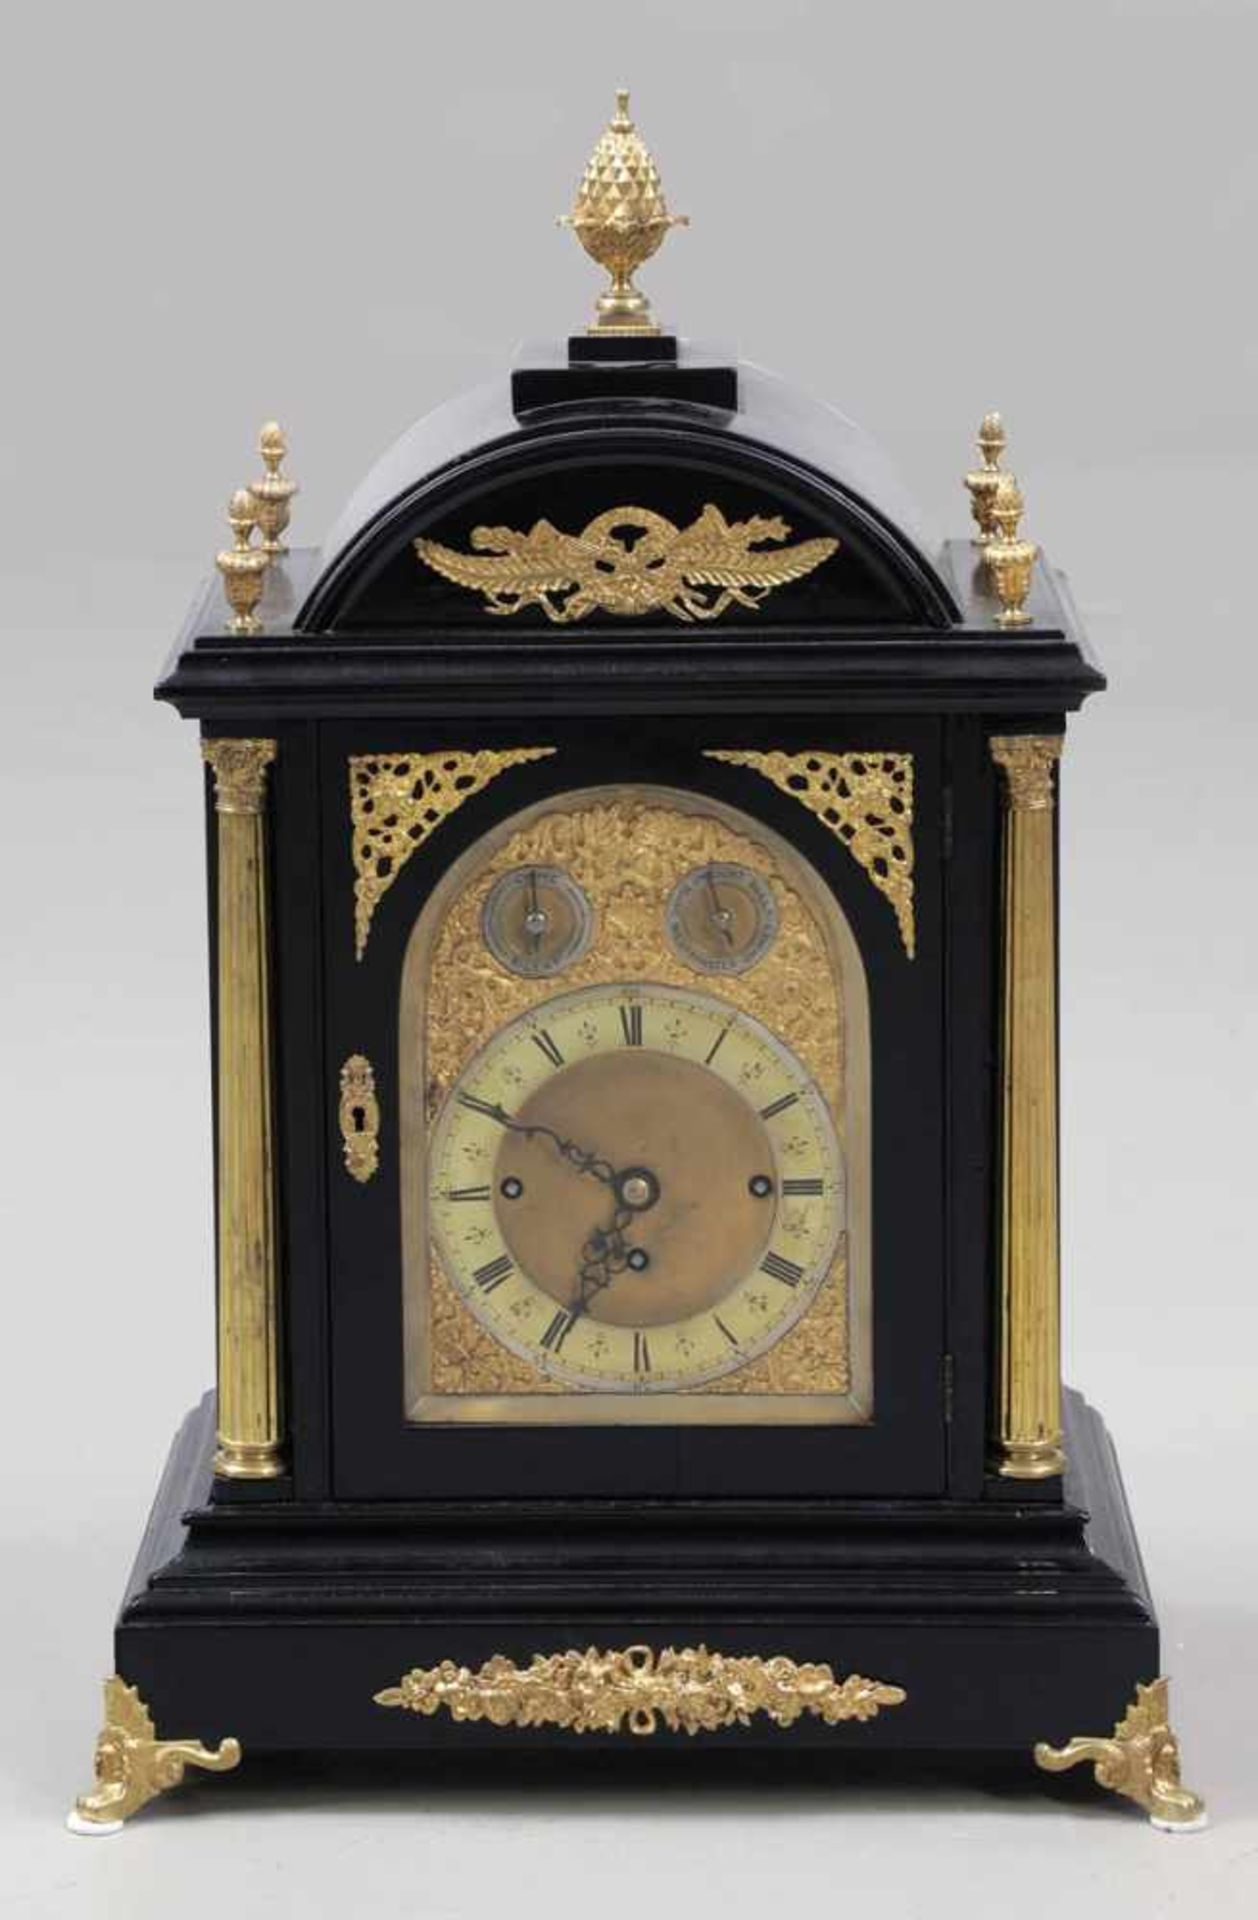 Bracket-Clock Um 1860. Holz. Messing. 67 x 44 x 30 cm. Schlag auf acht Glocken. Römische und